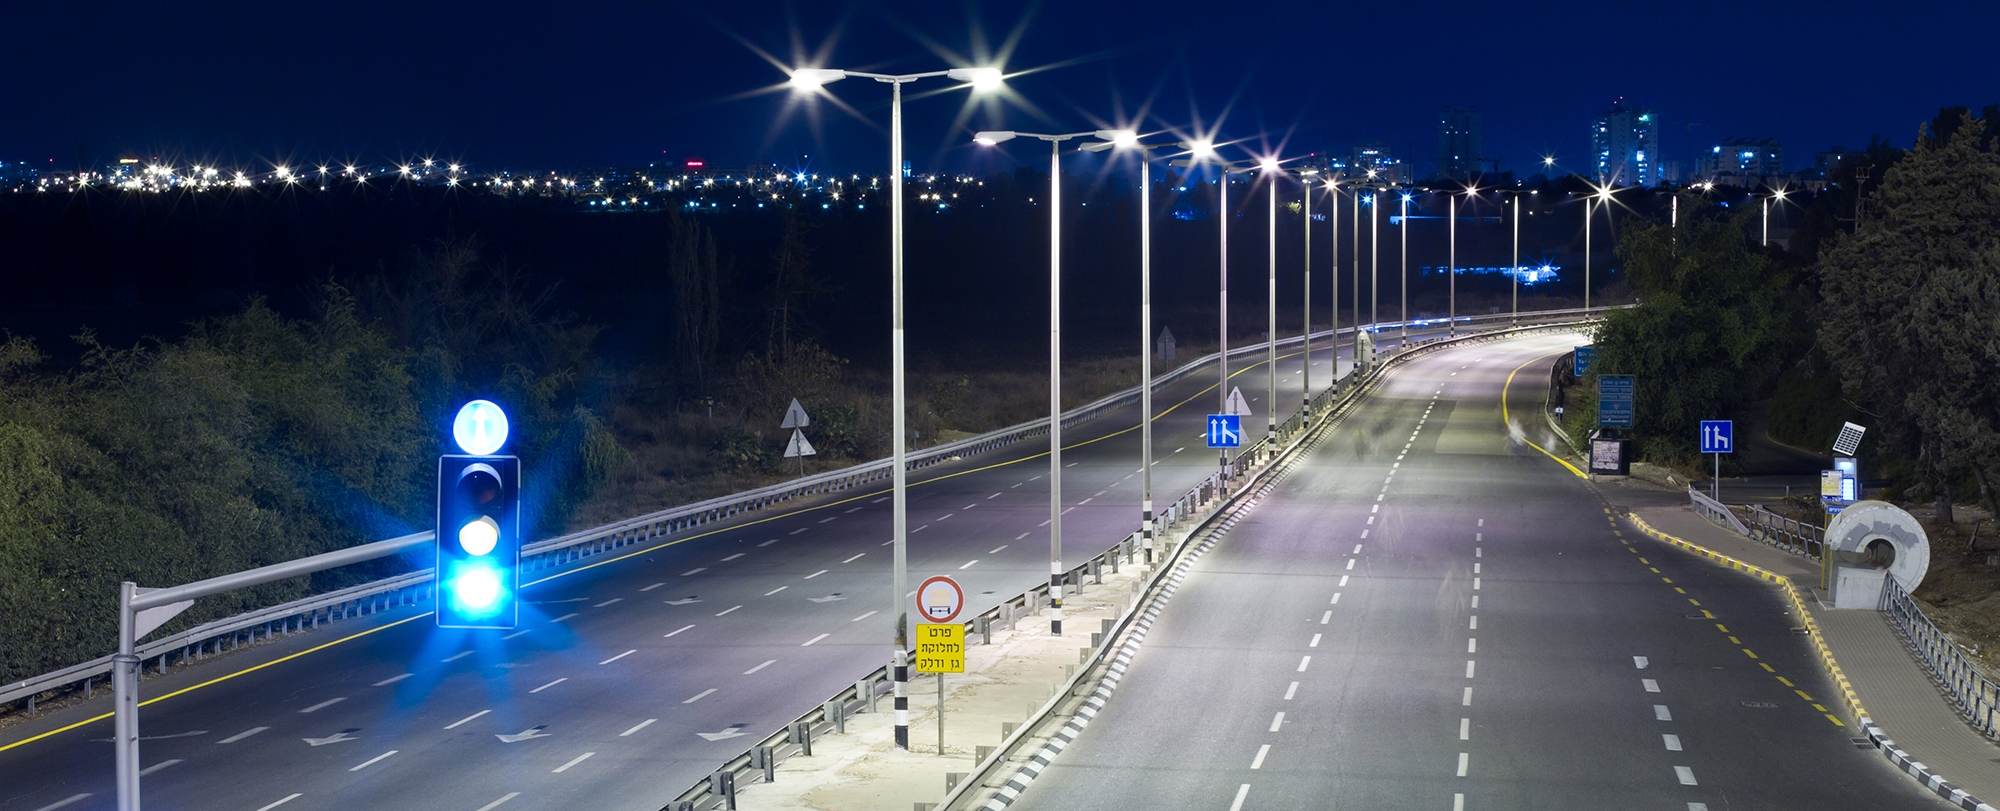 Tecnología LED contribuye a frenar contaminación lumínica